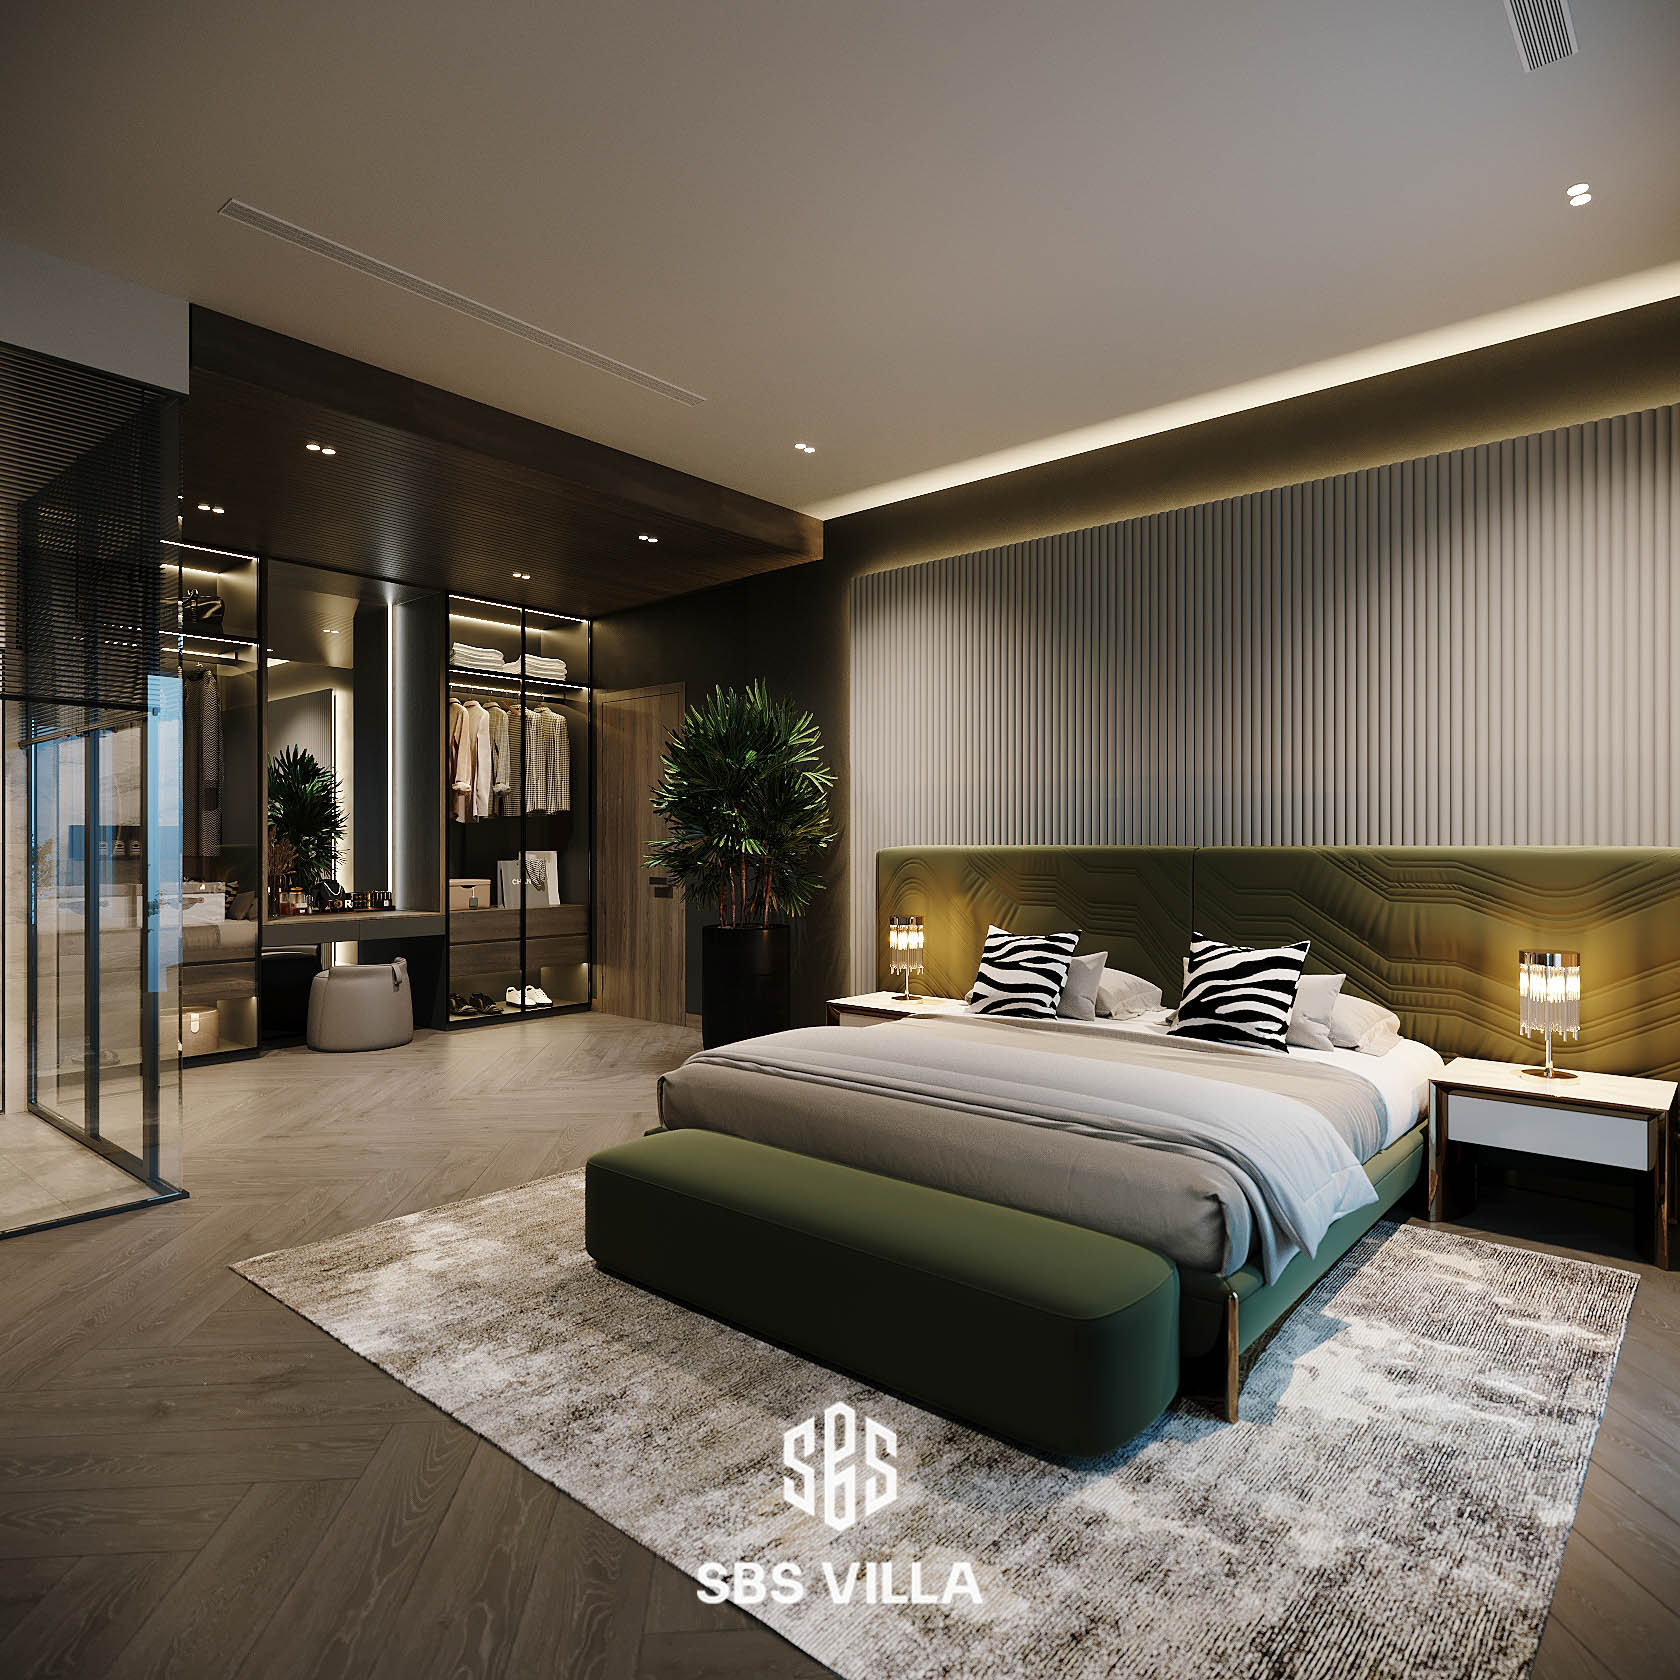 Tính cá nhân hóa của phòng ngủ nhà biệt thự hiện đại được thể hiện qua màu sắc, chất liệu, đường nét 